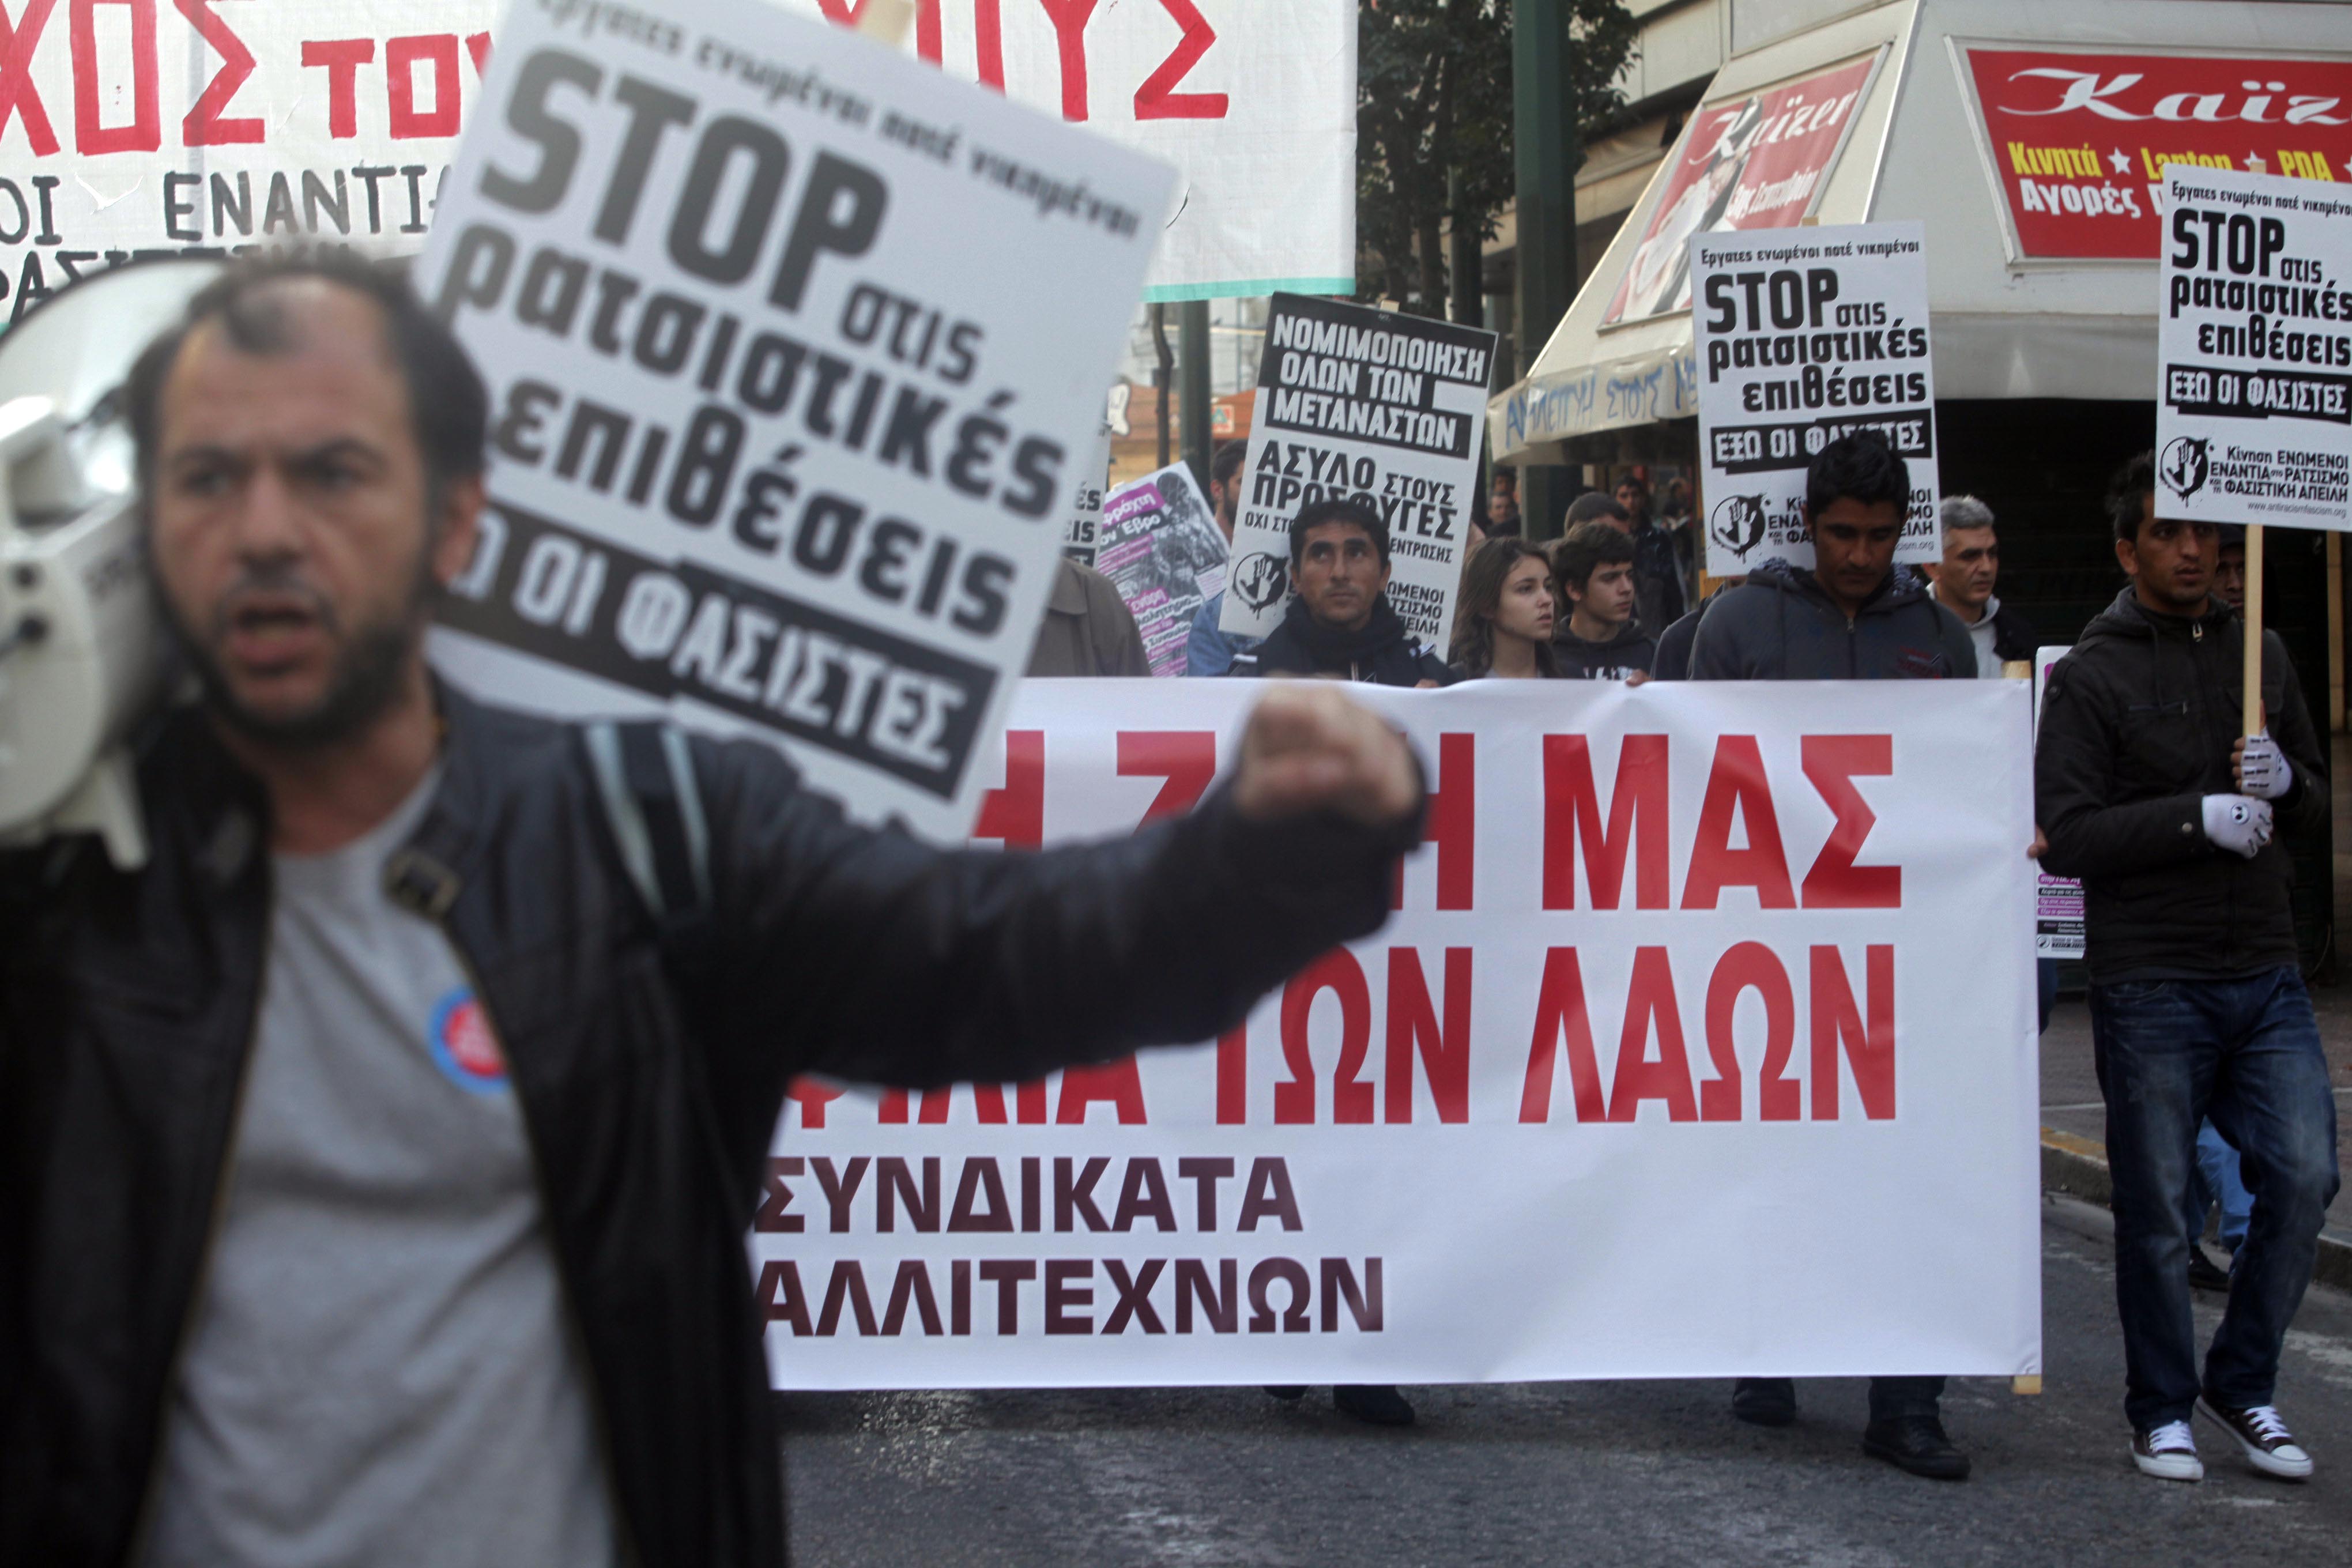 Αντιρατσιστική πορεία στο κέντρο της Αθήνας